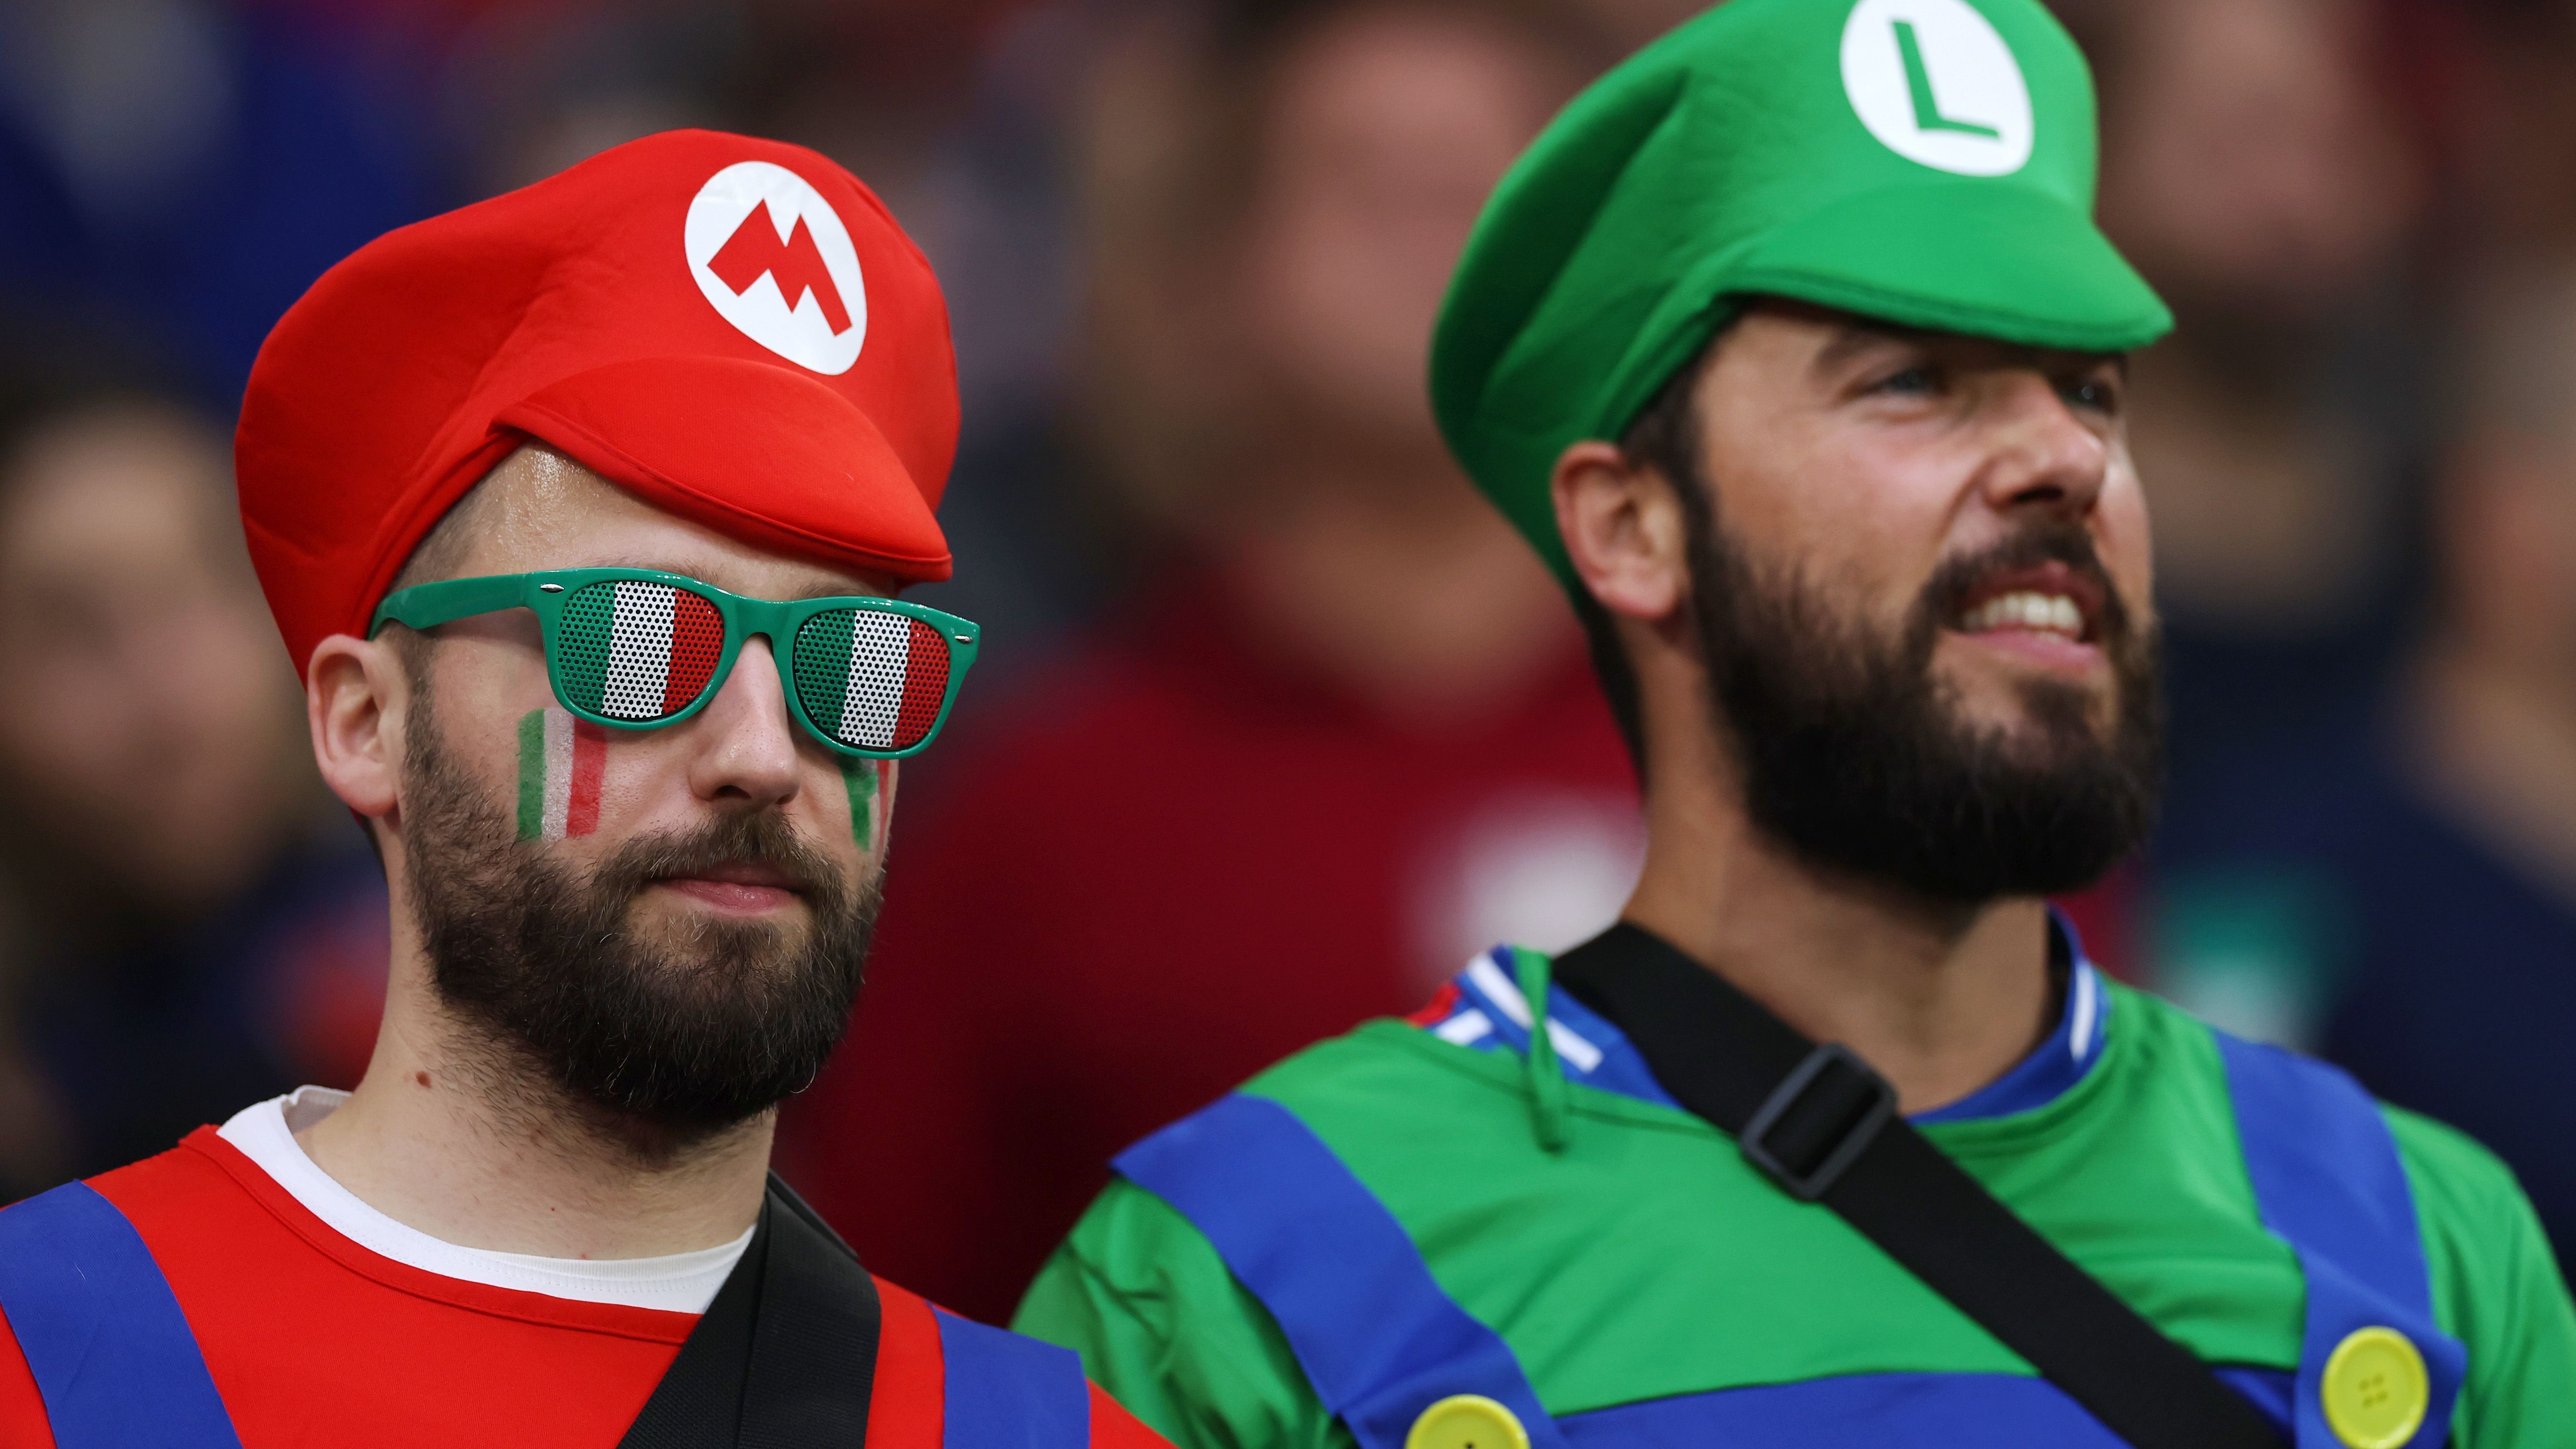 <strong>Mario und Luigi sind auch da</strong><br>Die Kostüme der beiden vor allem mit Italien verbundenen Videospiel-Helden waren in Gelsenkirchen gleich mehrfach zu sehen.&nbsp;